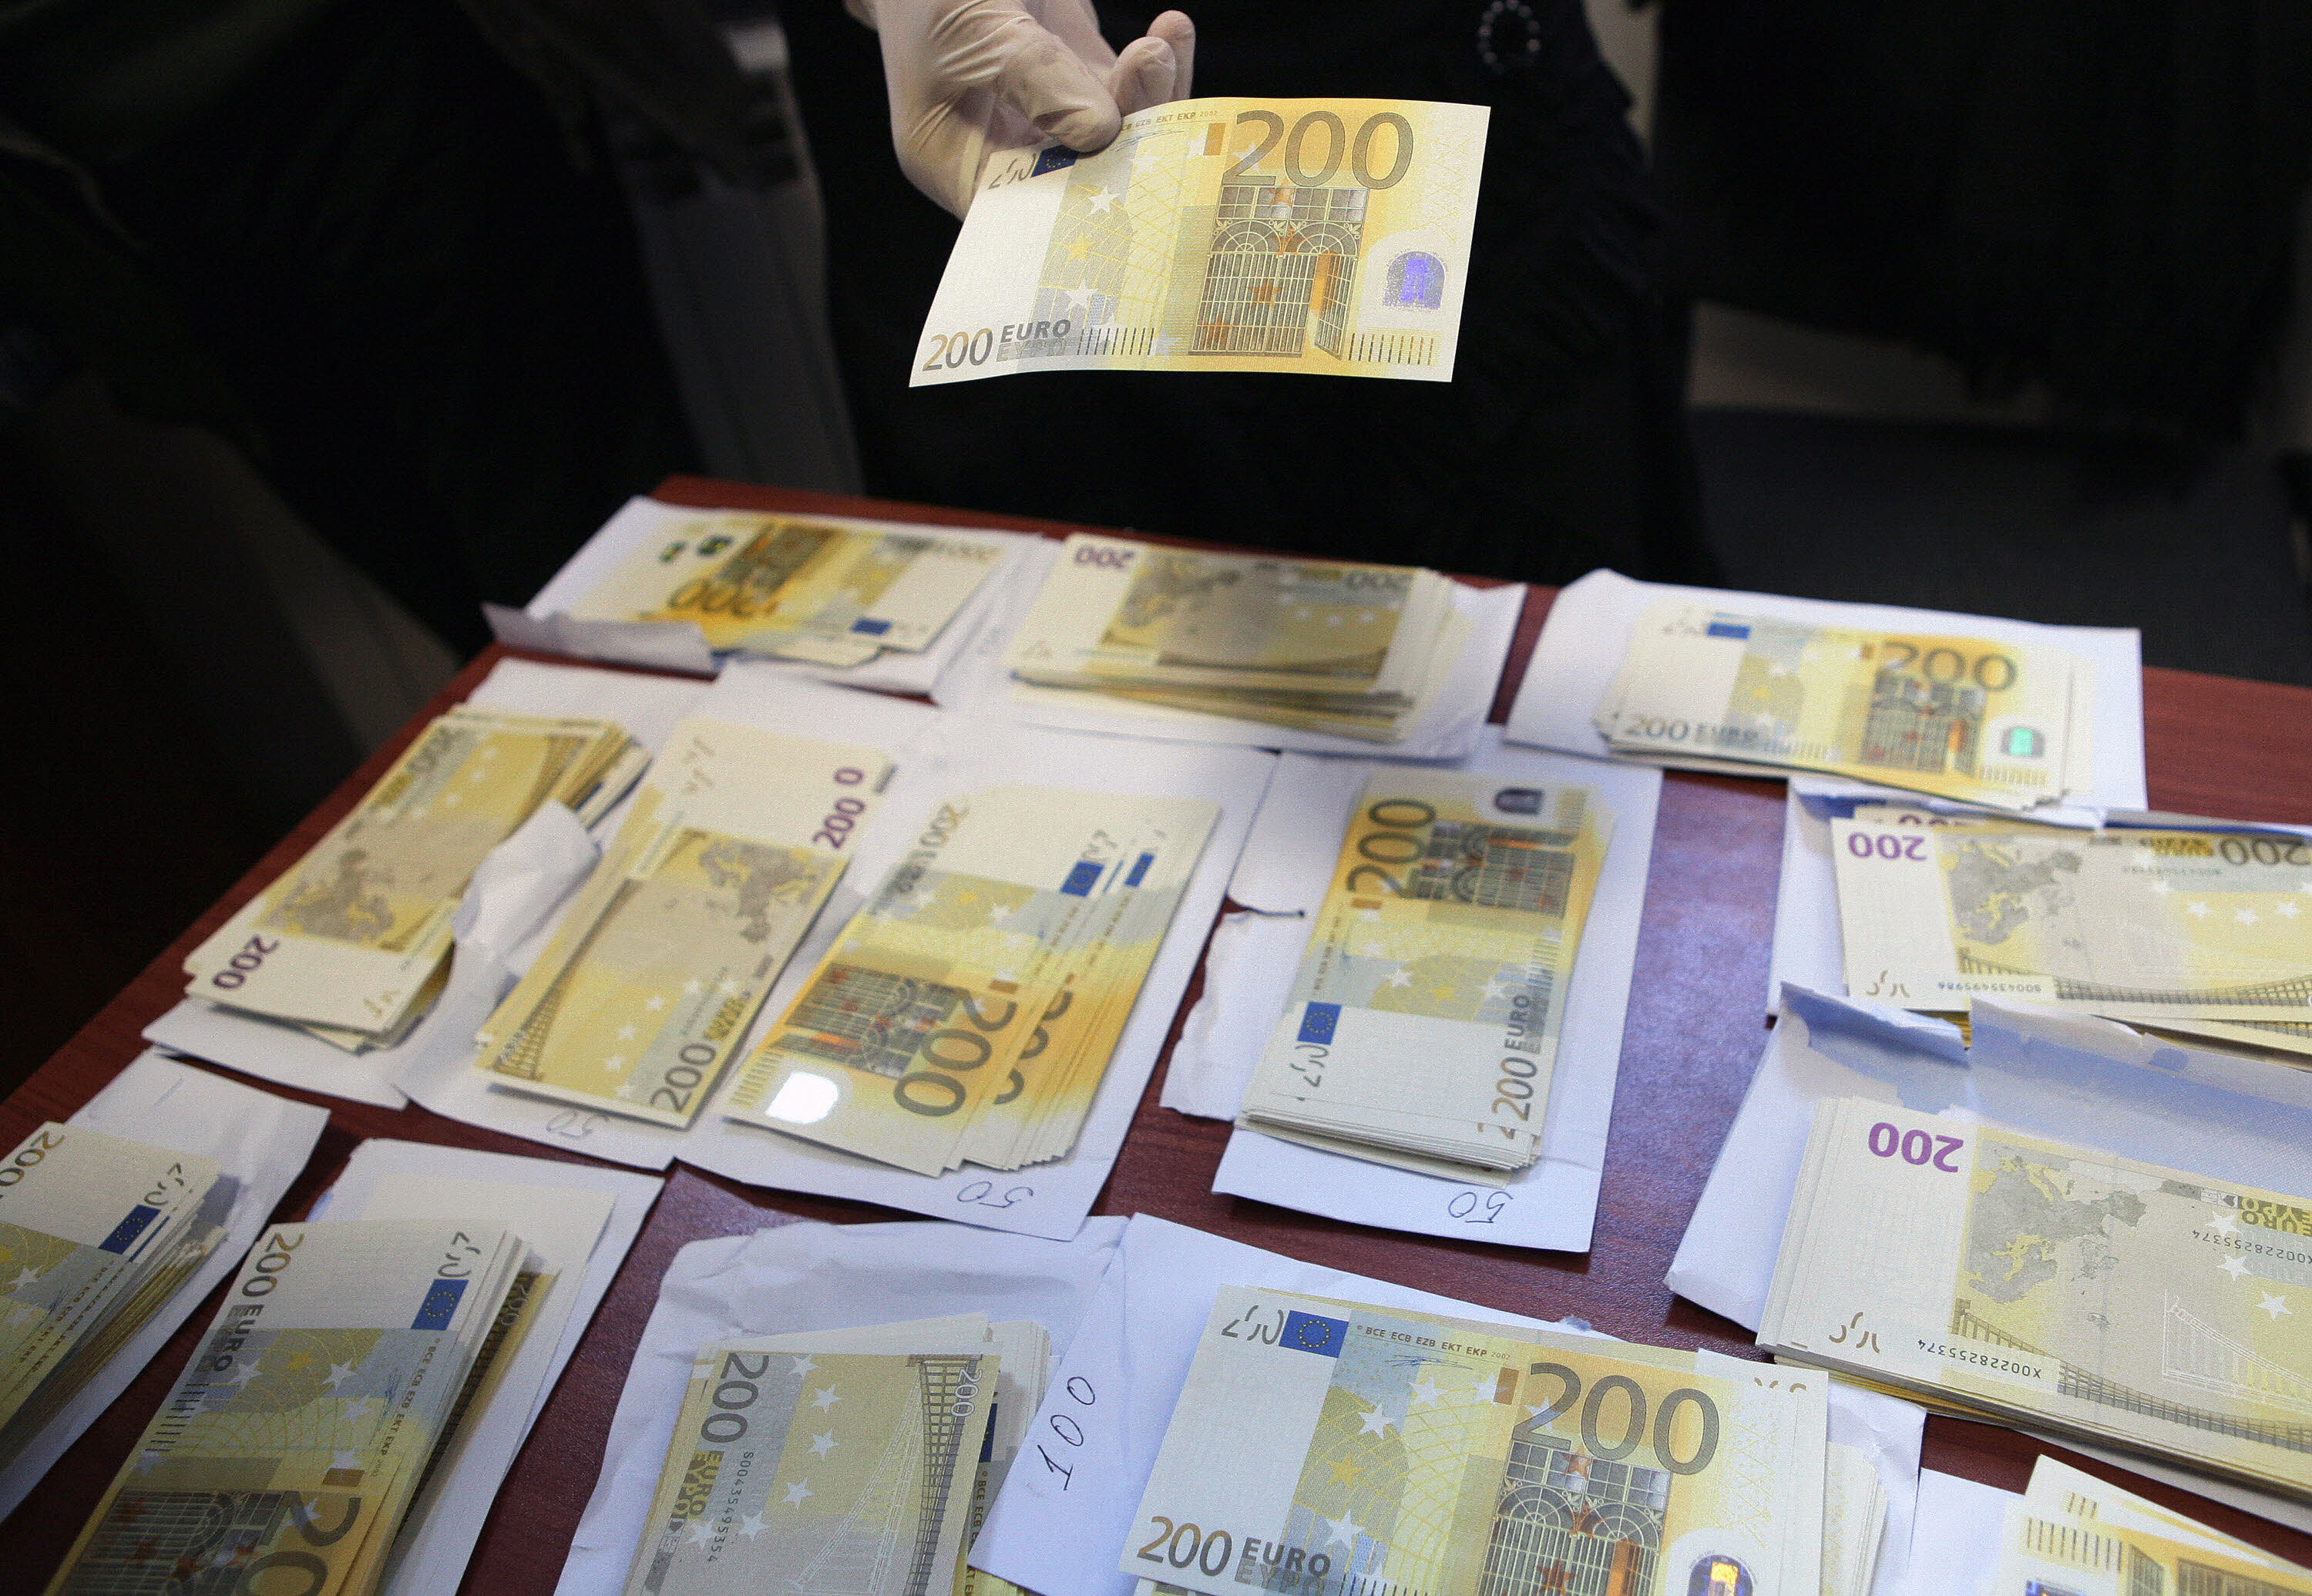 Italienische Mafia-Geldfälscher-Bande zerschlagen – Festnahmen auch in Frankreich und Belgien